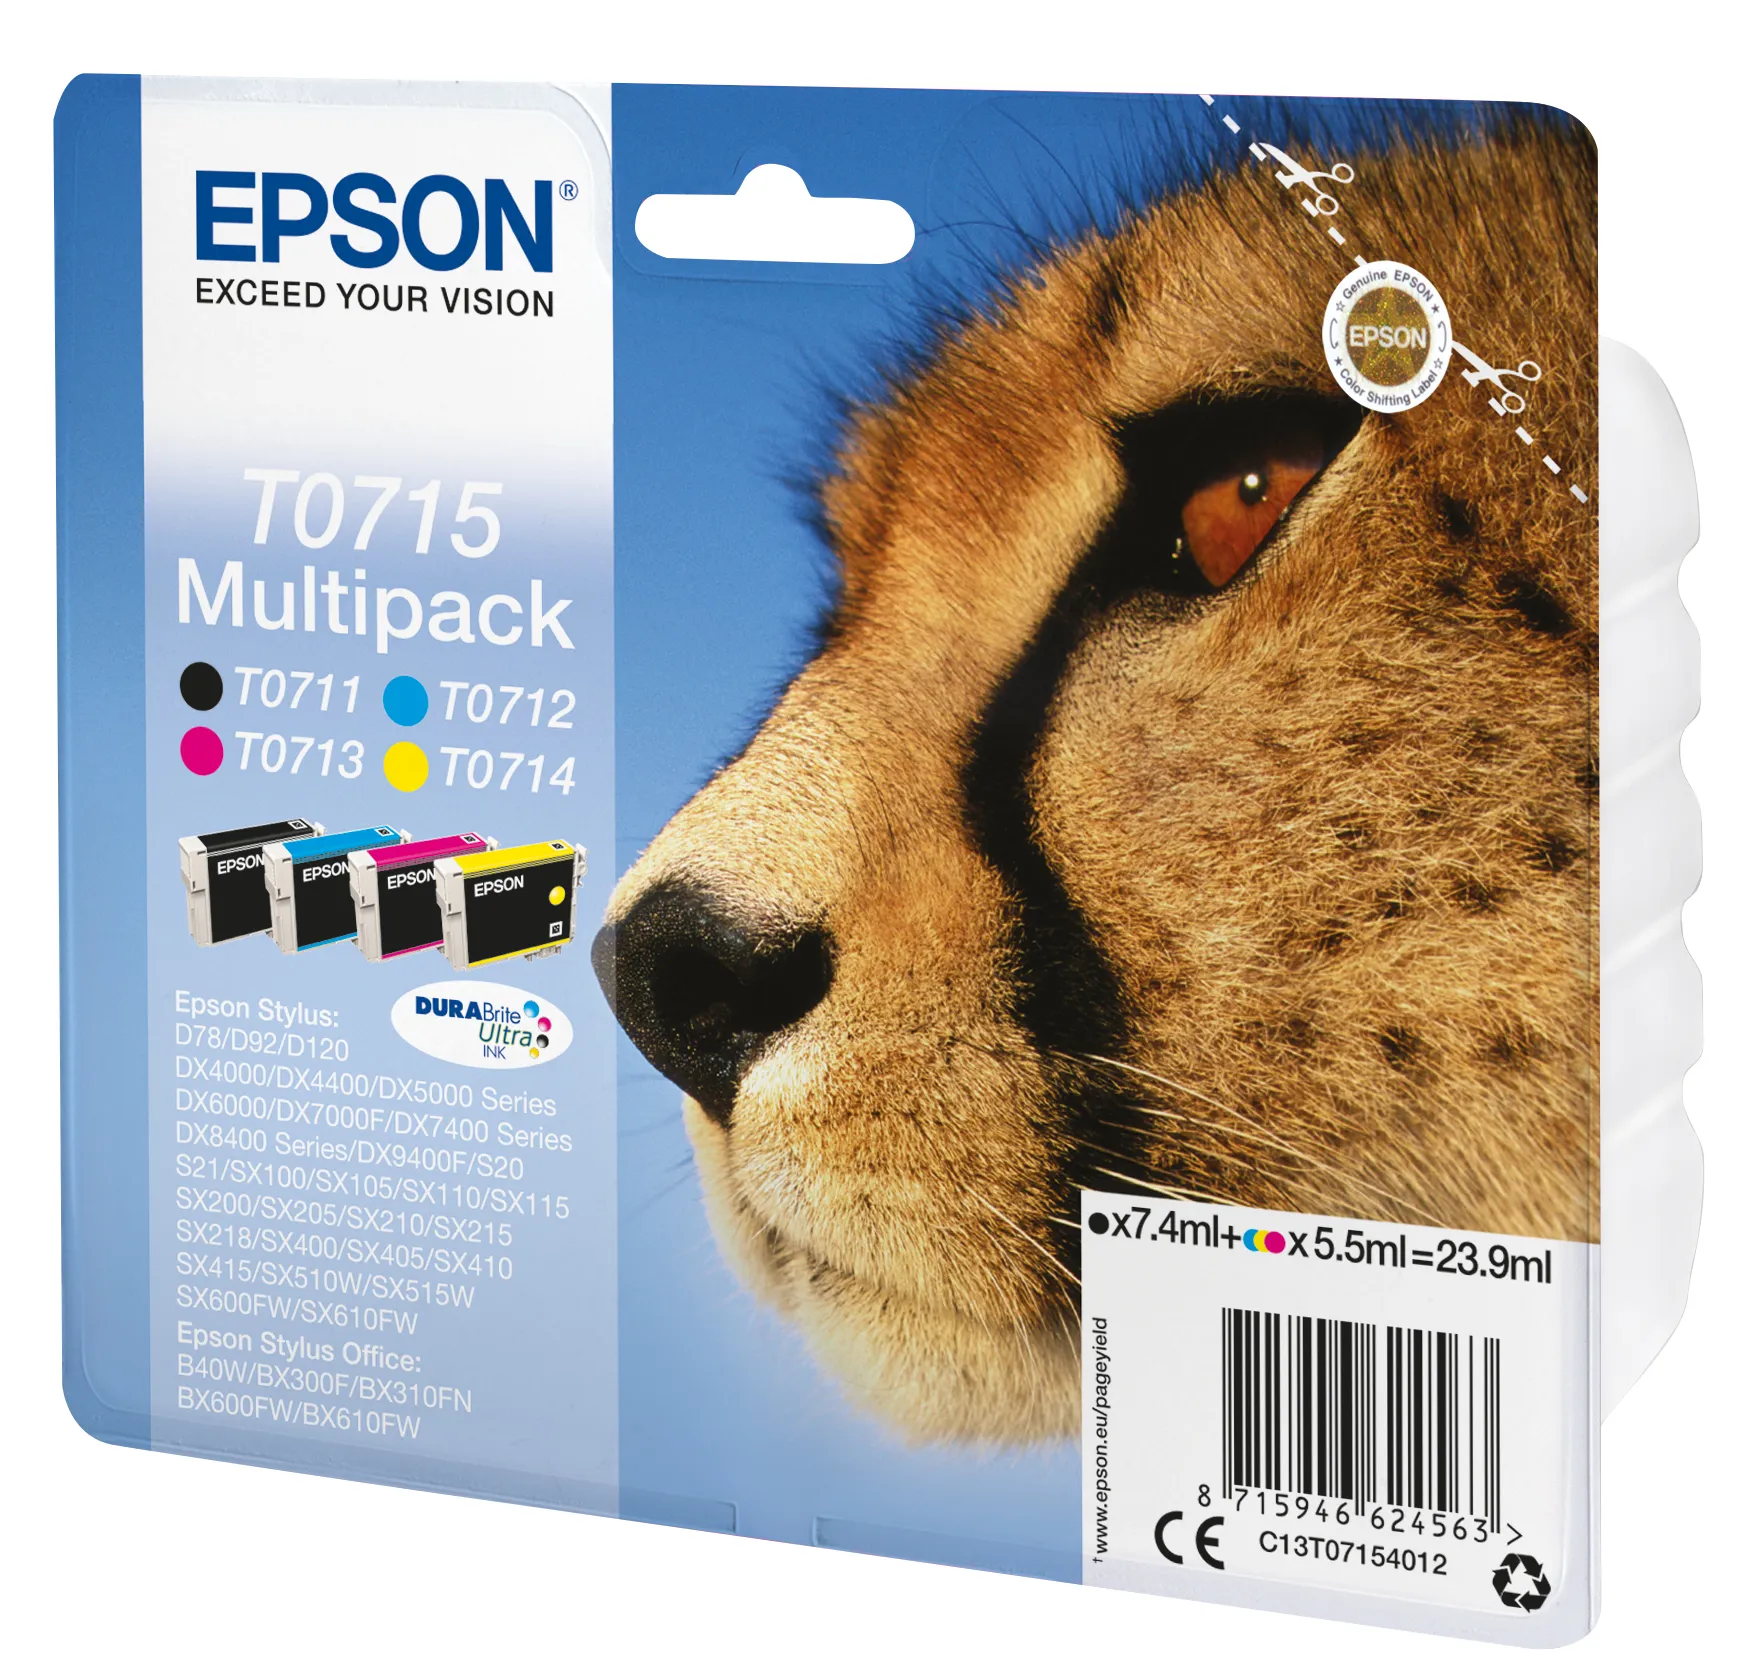 Vente EPSON DURABRITE Ultra cartouche d encre noir et Epson au meilleur prix - visuel 4